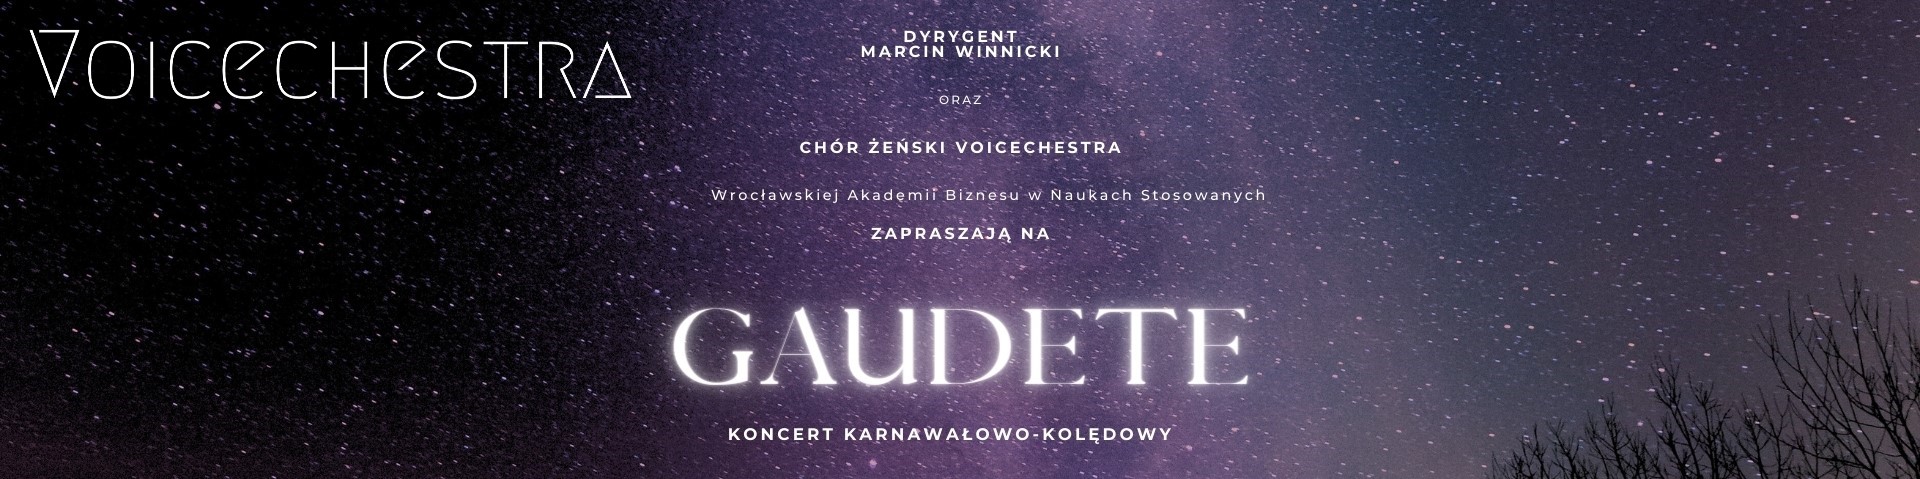 GAUDETE concert by Voicechestra women’s choir